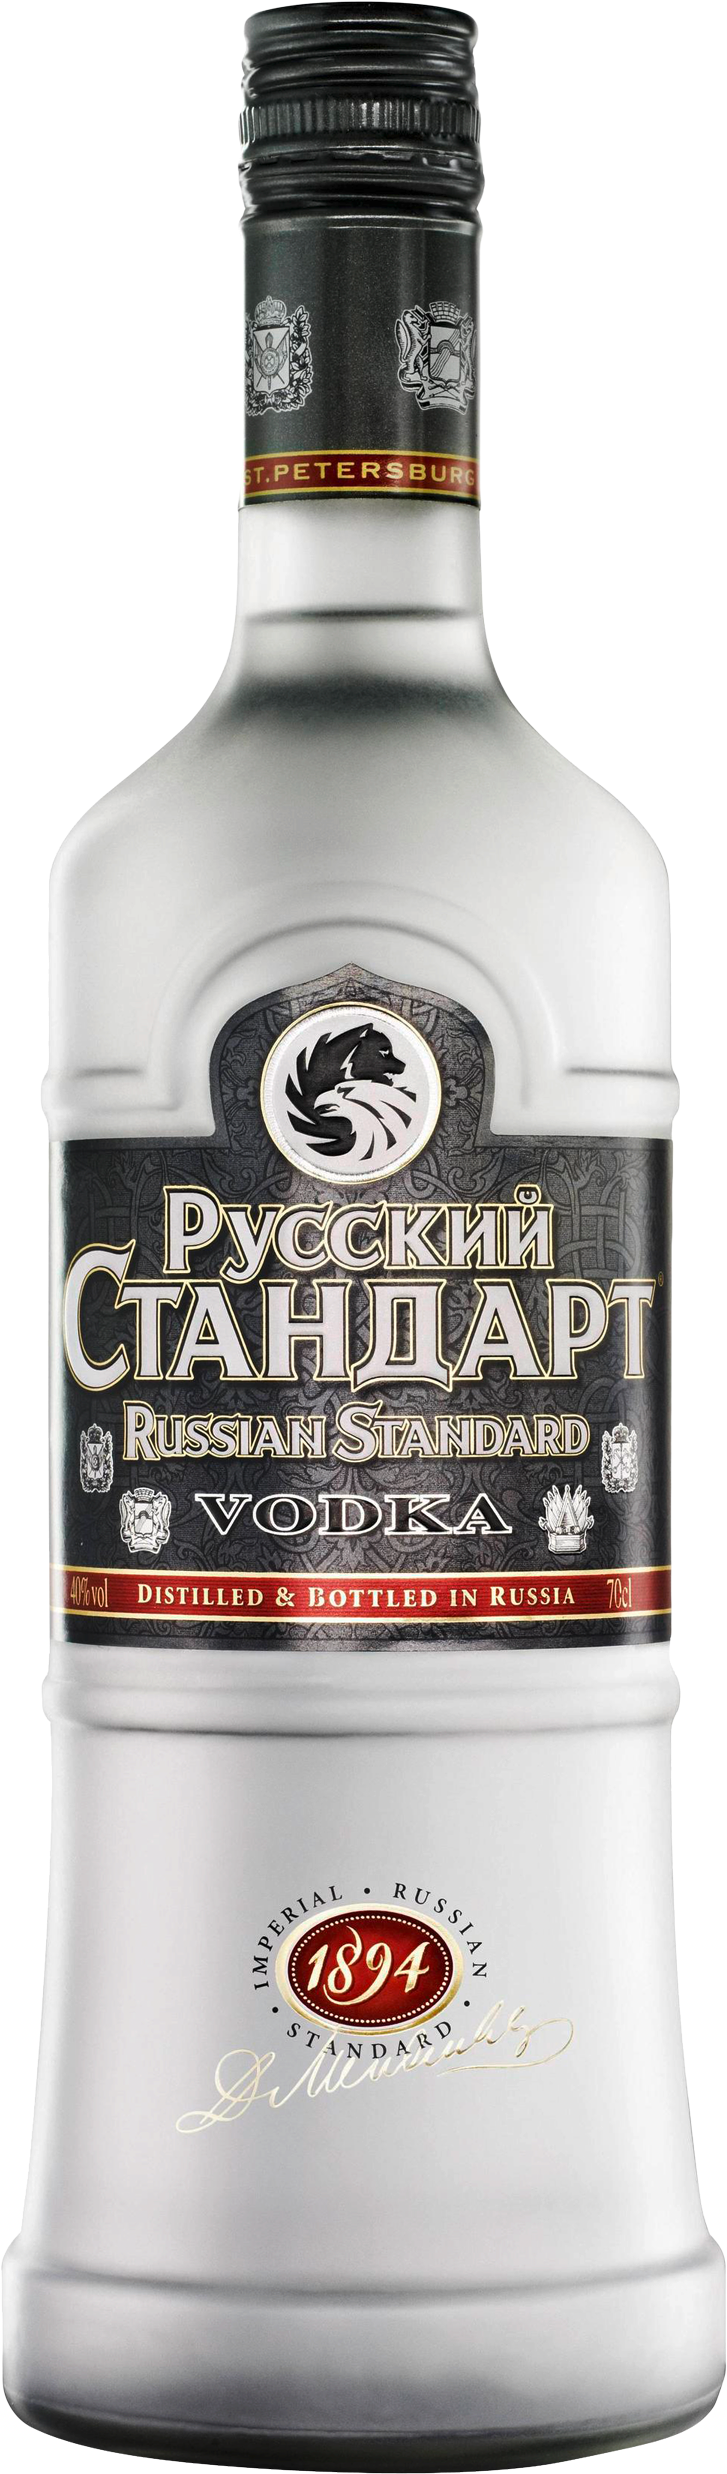 Russian Standard Vodka Bottle